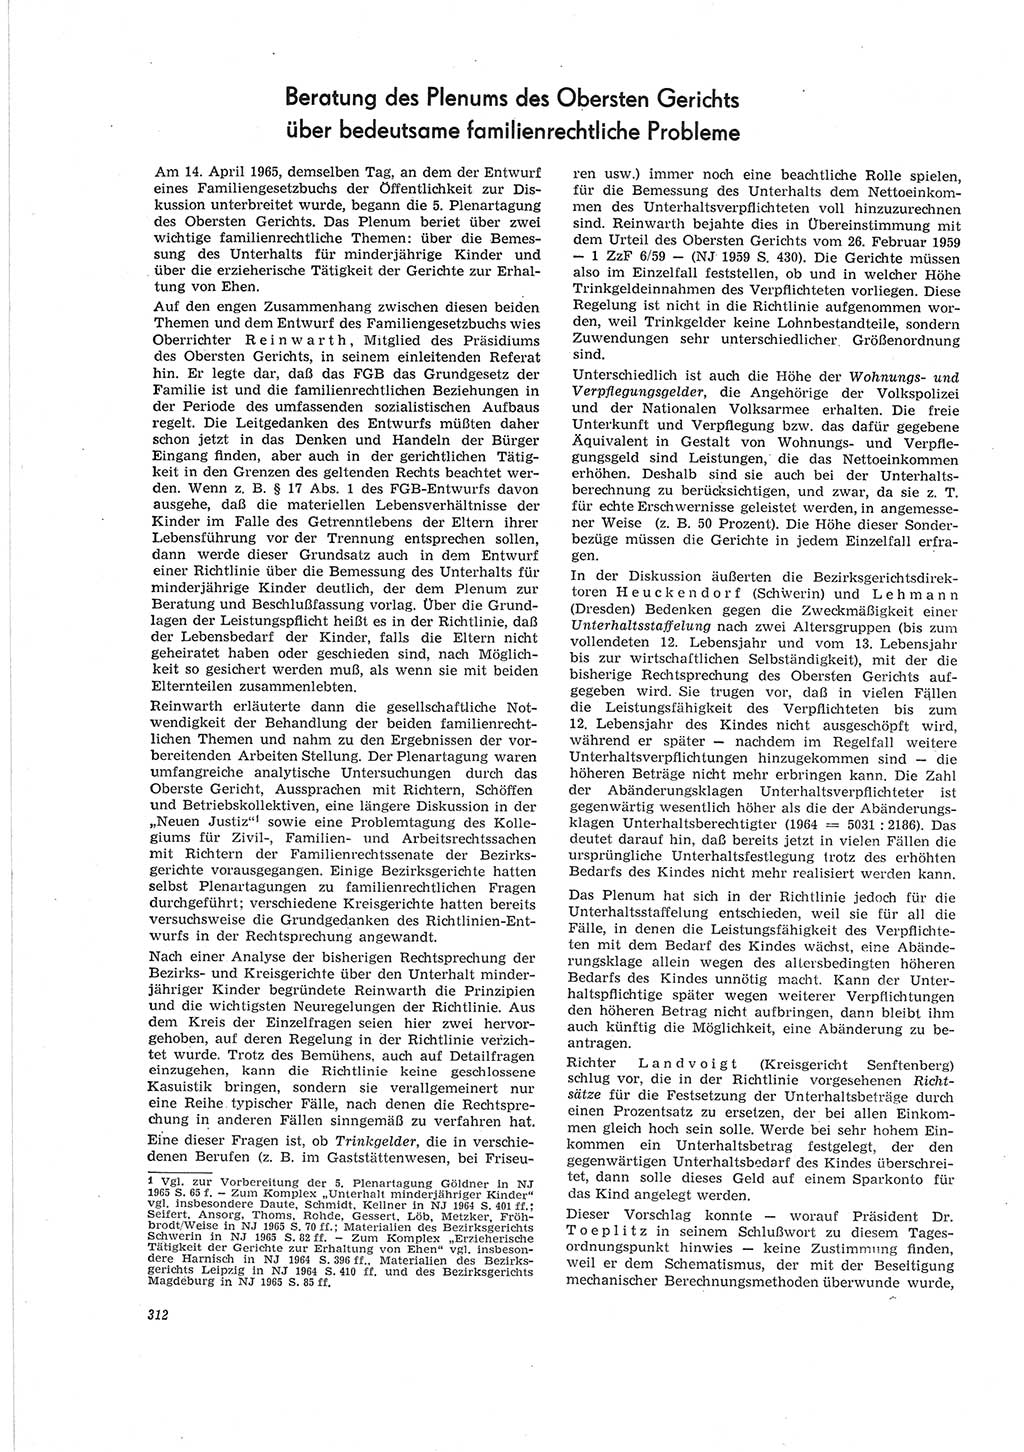 Neue Justiz (NJ), Zeitschrift für Recht und Rechtswissenschaft [Deutsche Demokratische Republik (DDR)], 19. Jahrgang 1965, Seite 312 (NJ DDR 1965, S. 312)